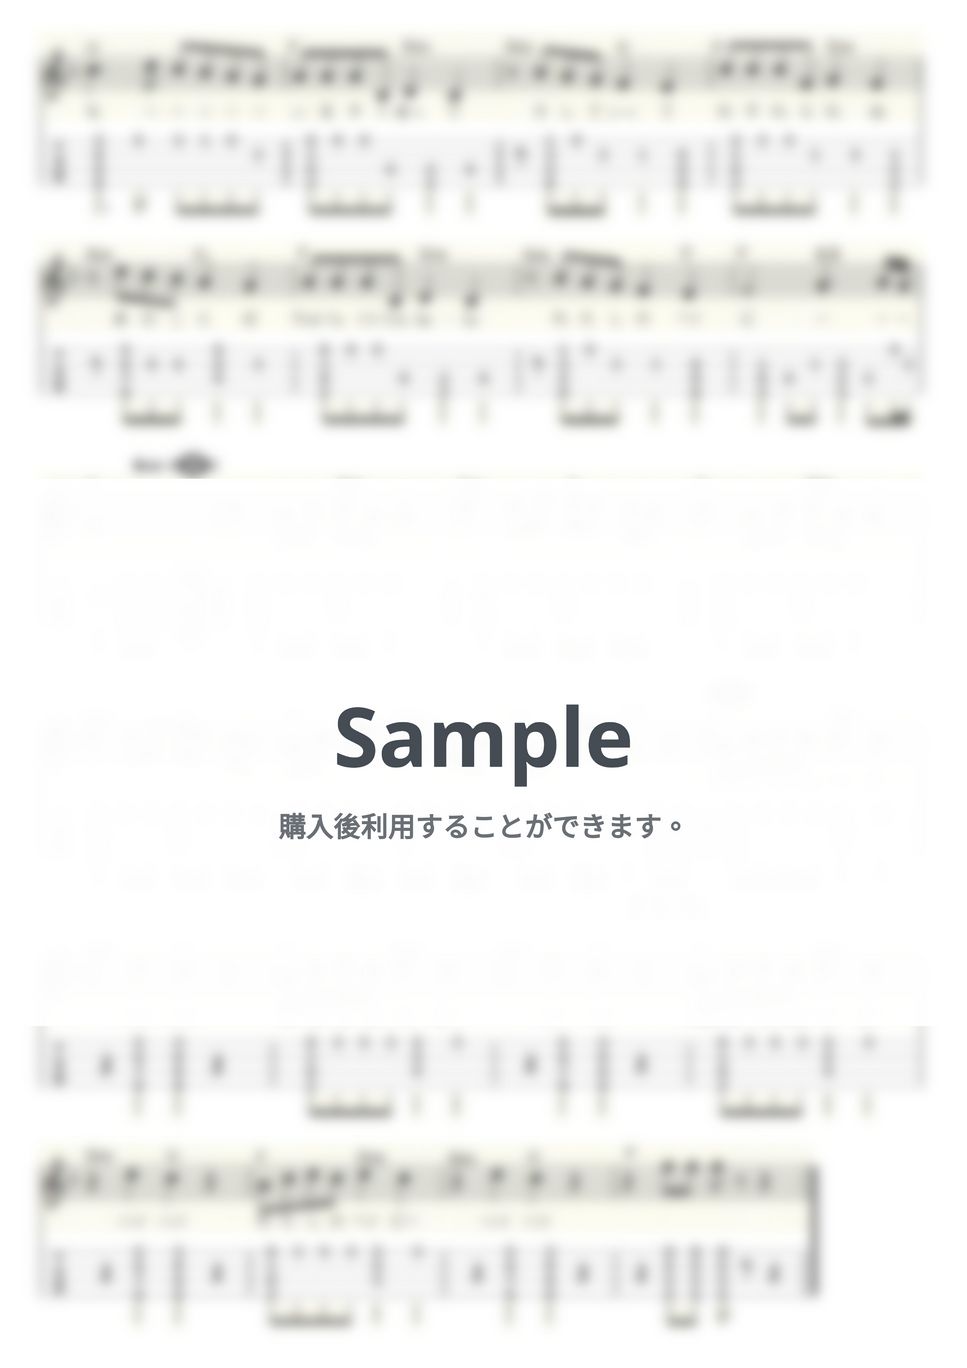 中尾ミエ - 可愛いベイビー (ｳｸﾚﾚｿﾛ/High-G・Low-G/中級) by ukulelepapa